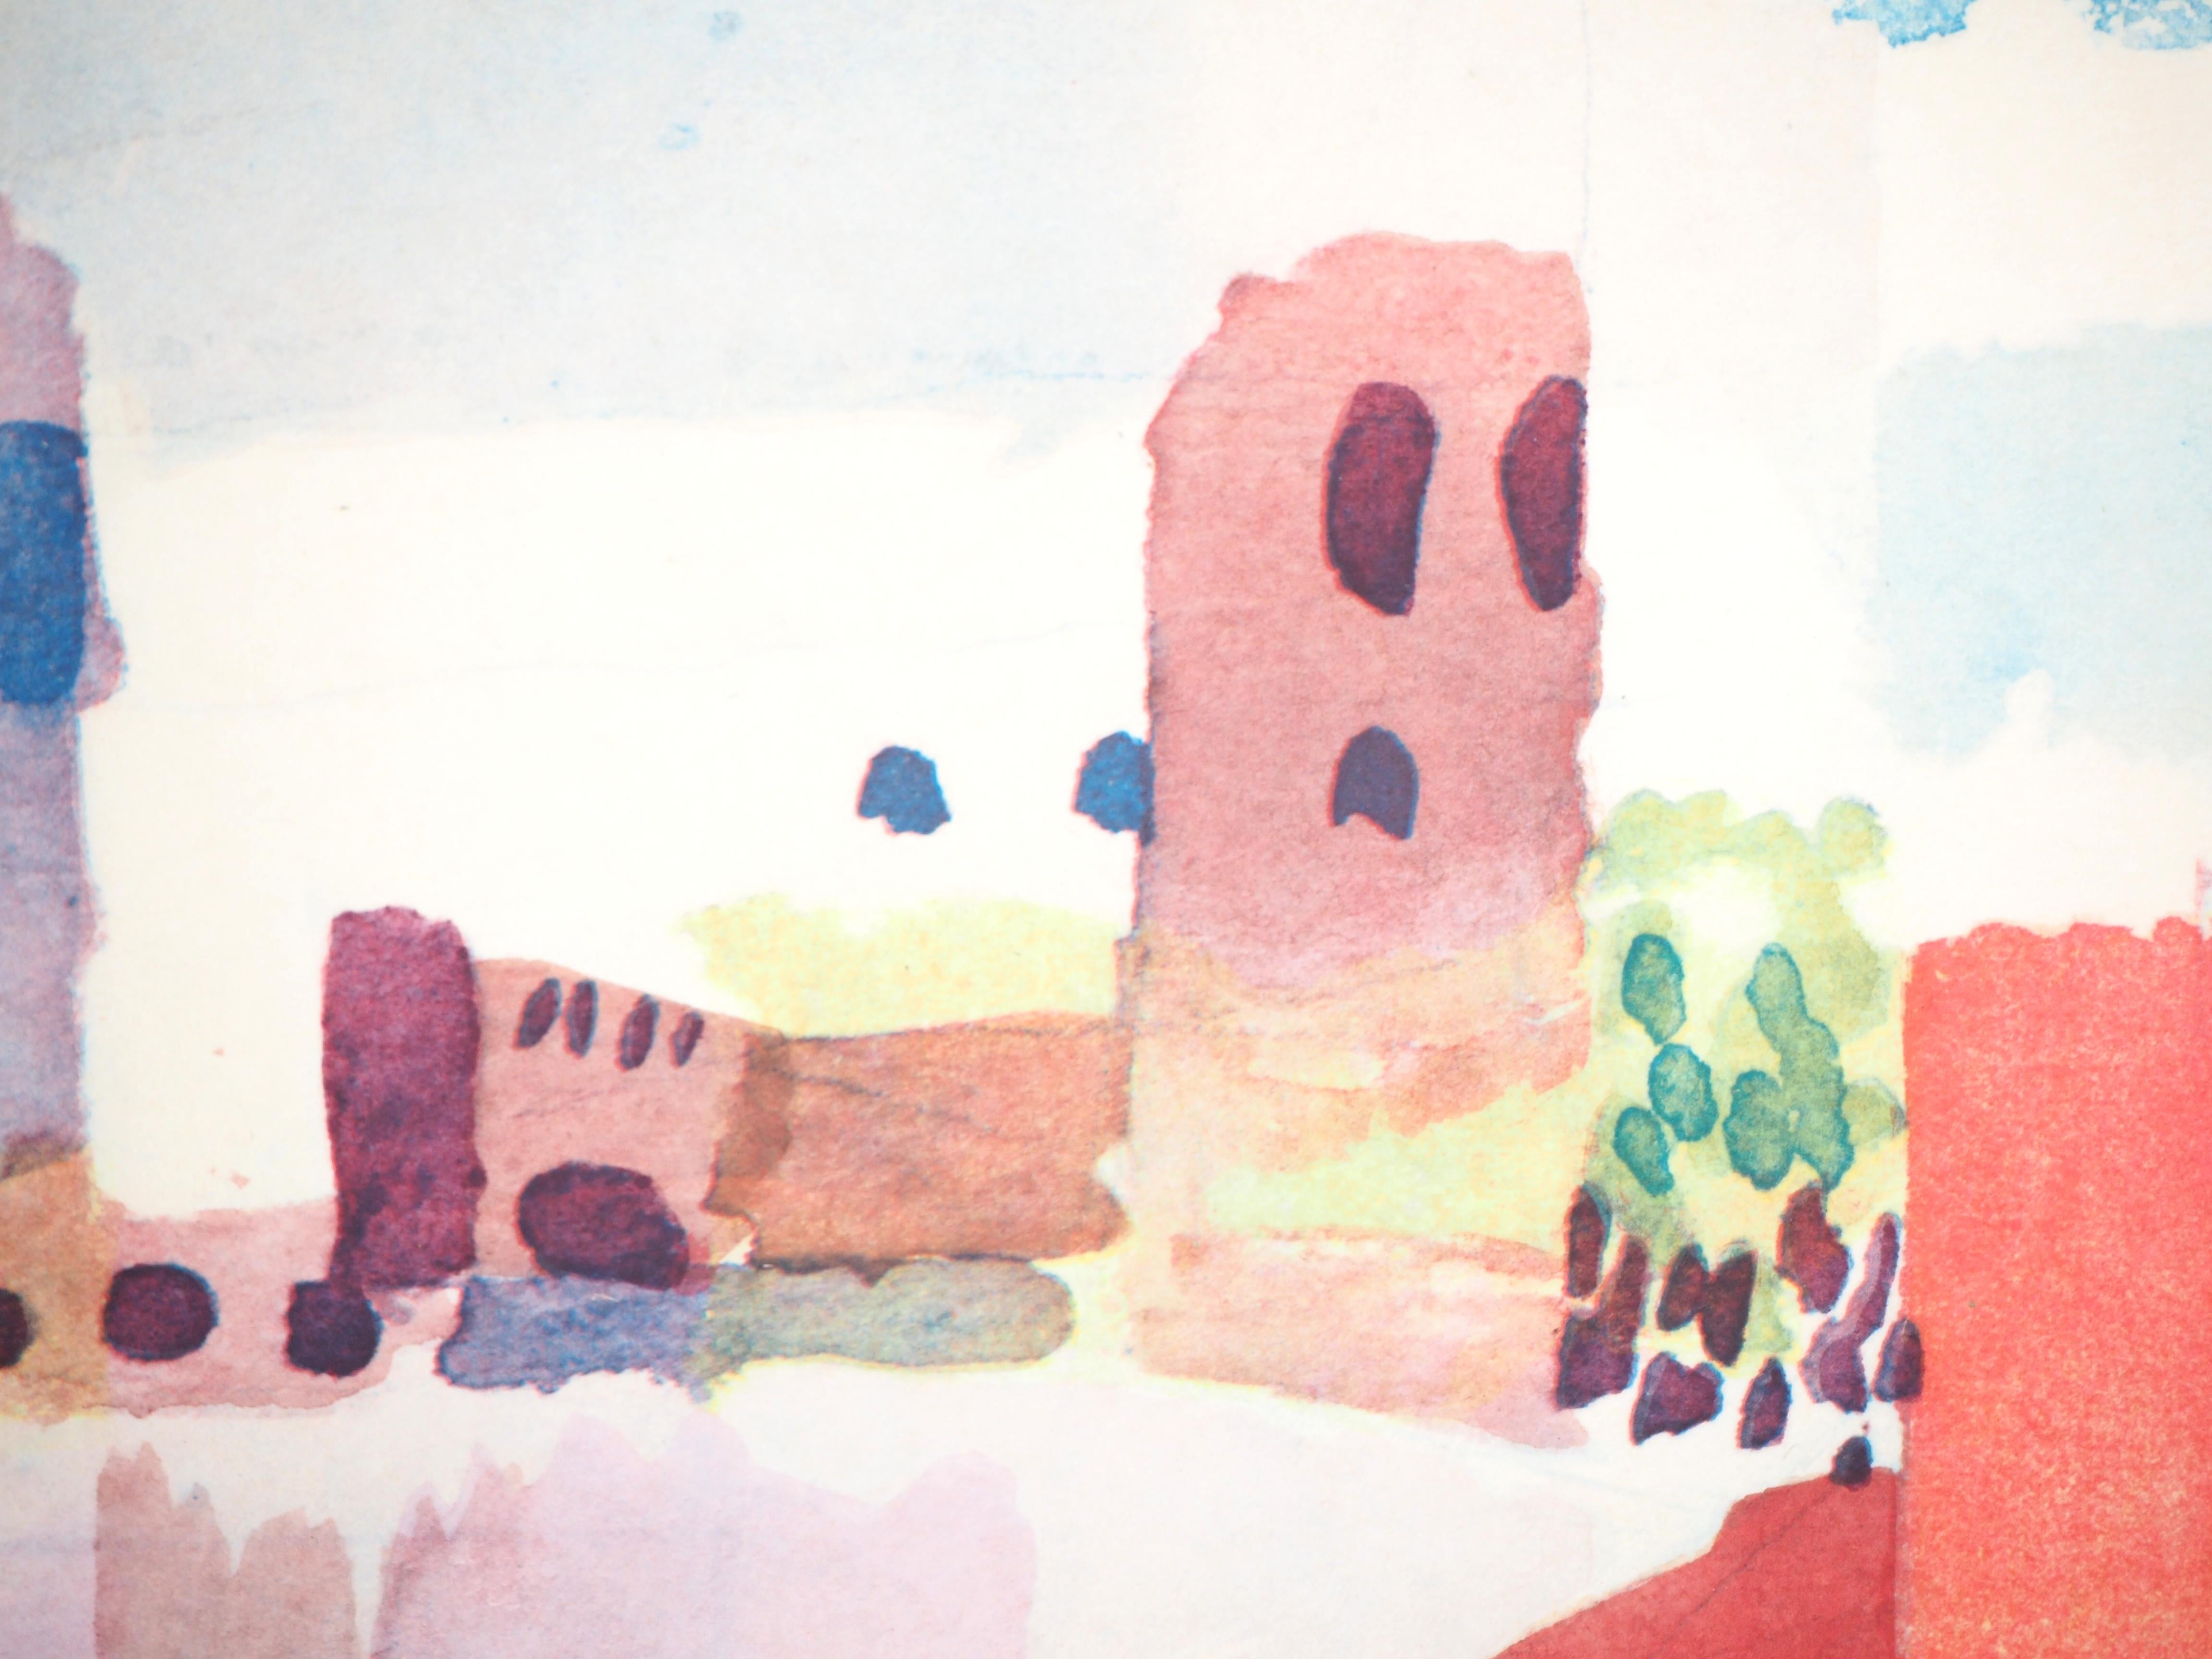 Paul KLEE (après)
Tunisie : Vue de Hammamet

Lithographie et pochoir (procédé Jacomet), sur papier canson
Signature imprimée dans la plaque
50 x 38,2 cm (19,6 x 14,9 in)

INFORMATION : Cette lithographie a été éditée en 1964 par la Galerie Berggruen